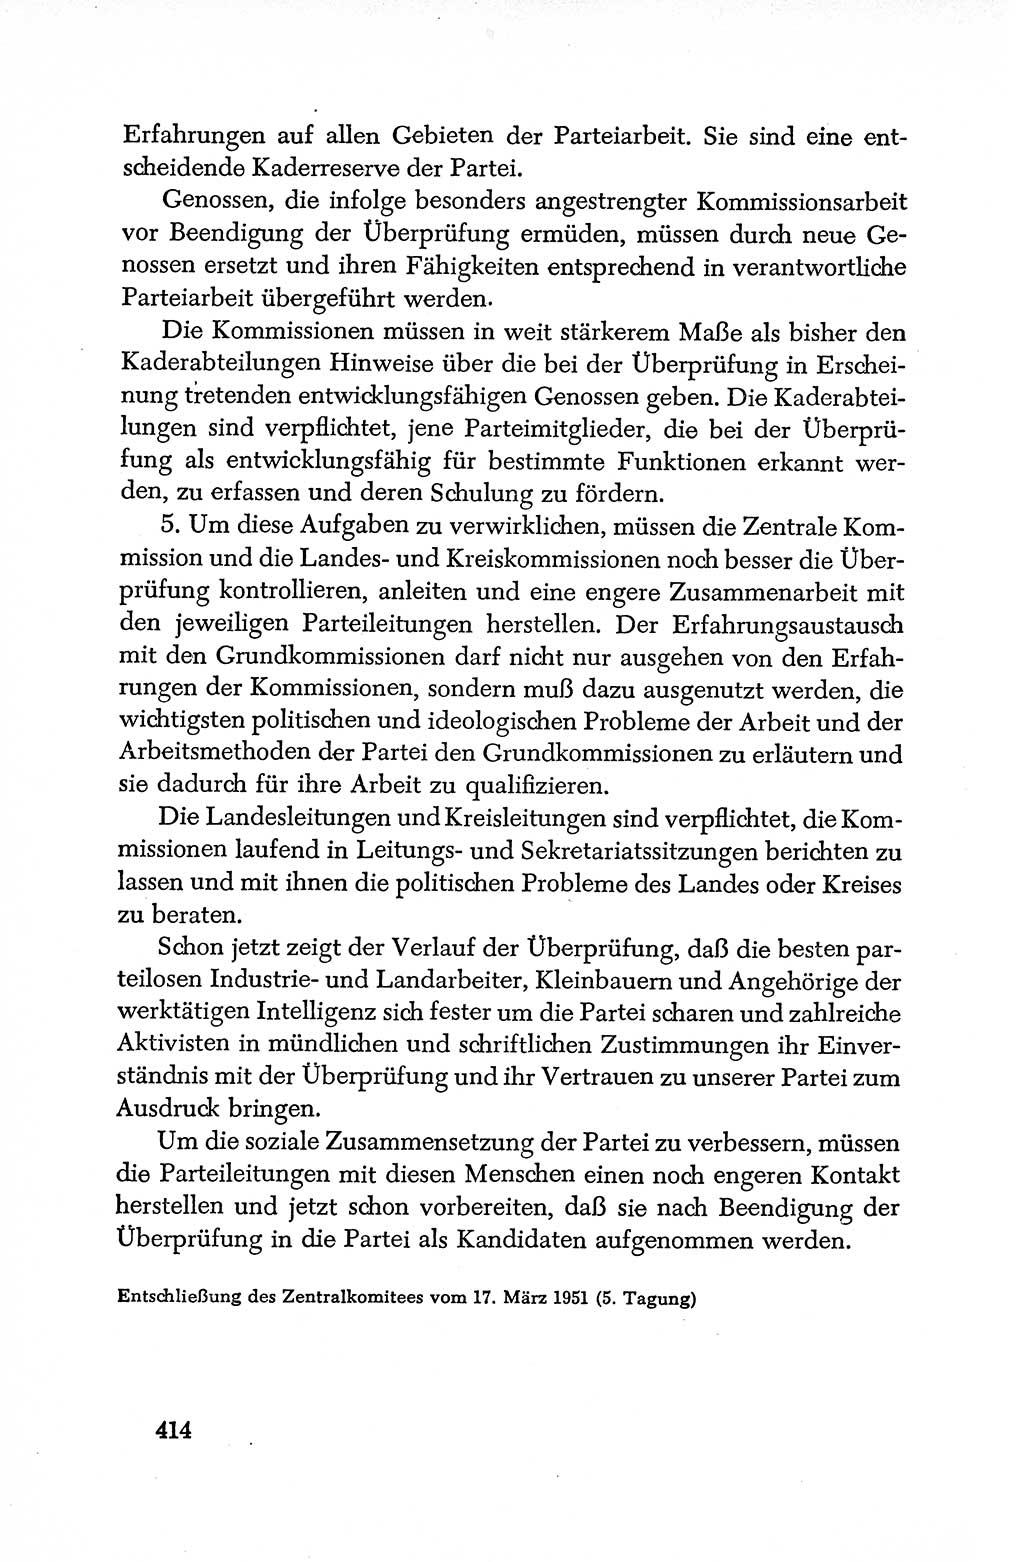 Dokumente der Sozialistischen Einheitspartei Deutschlands (SED) [Deutsche Demokratische Republik (DDR)] 1950-1952, Seite 414 (Dok. SED DDR 1950-1952, S. 414)